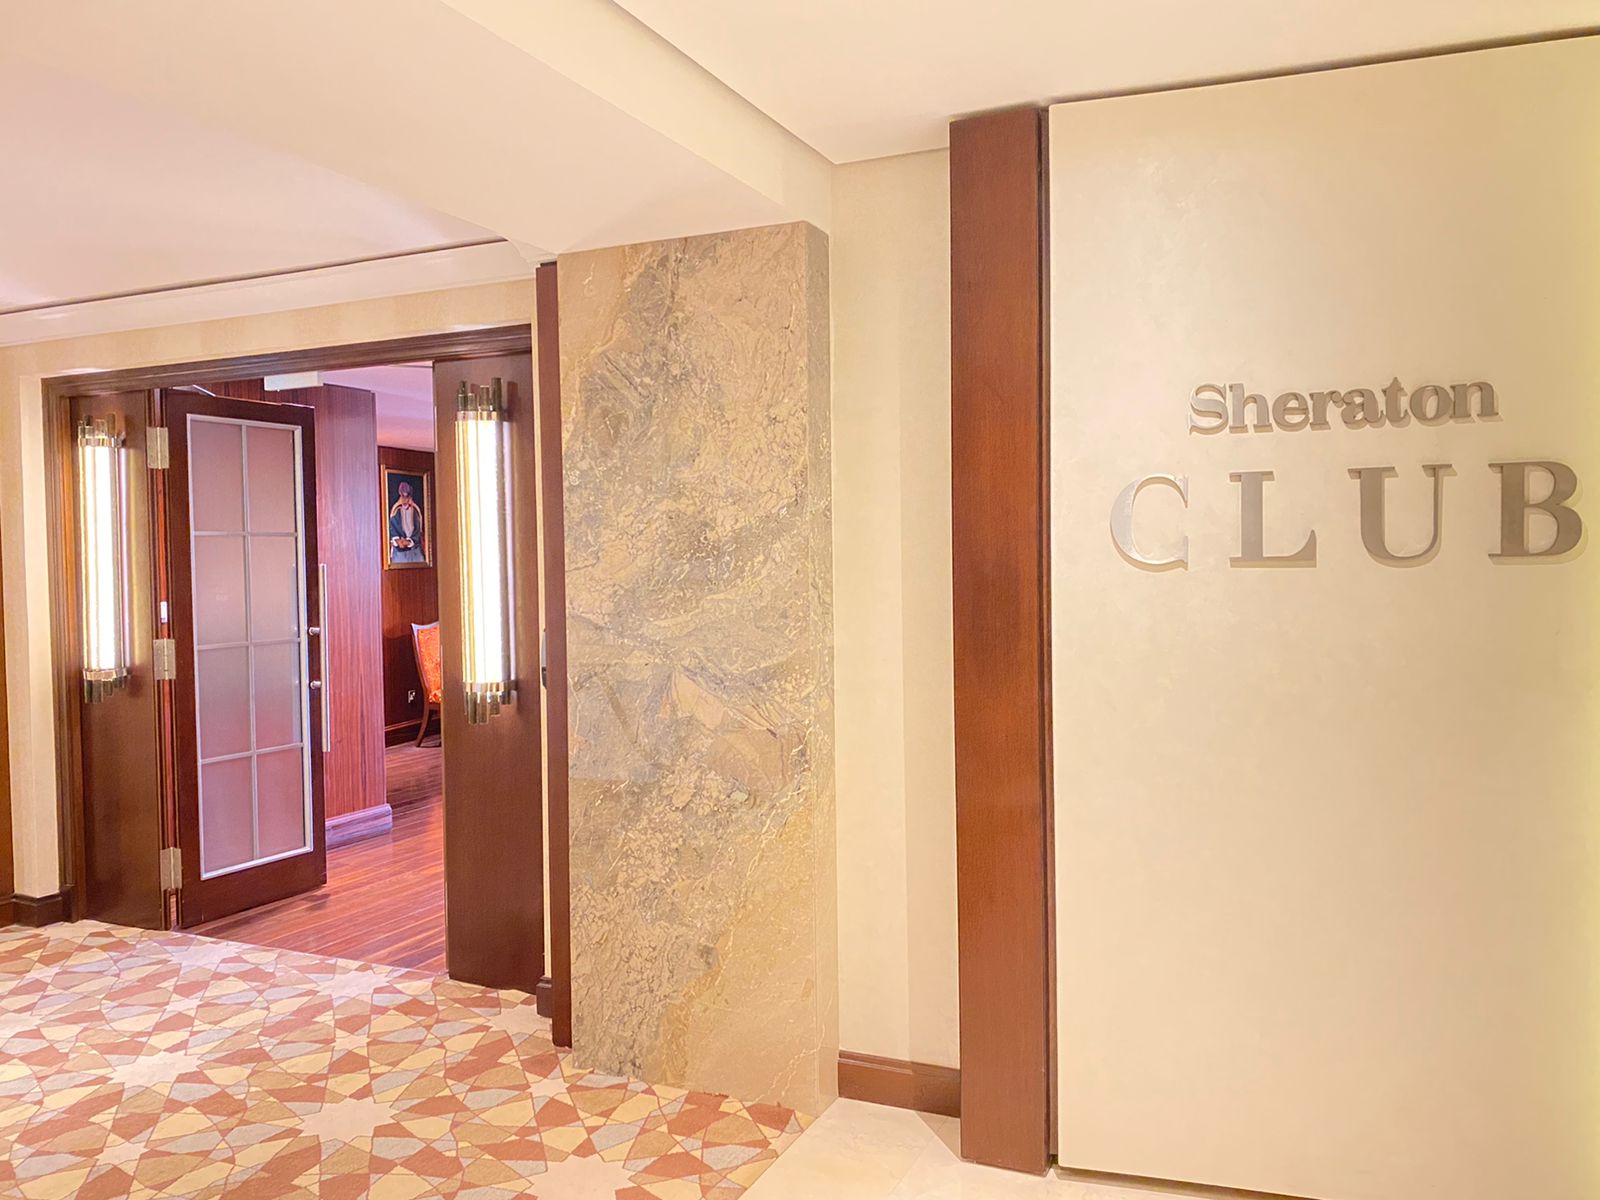 Sheraton Oman Club Lounge Entrance